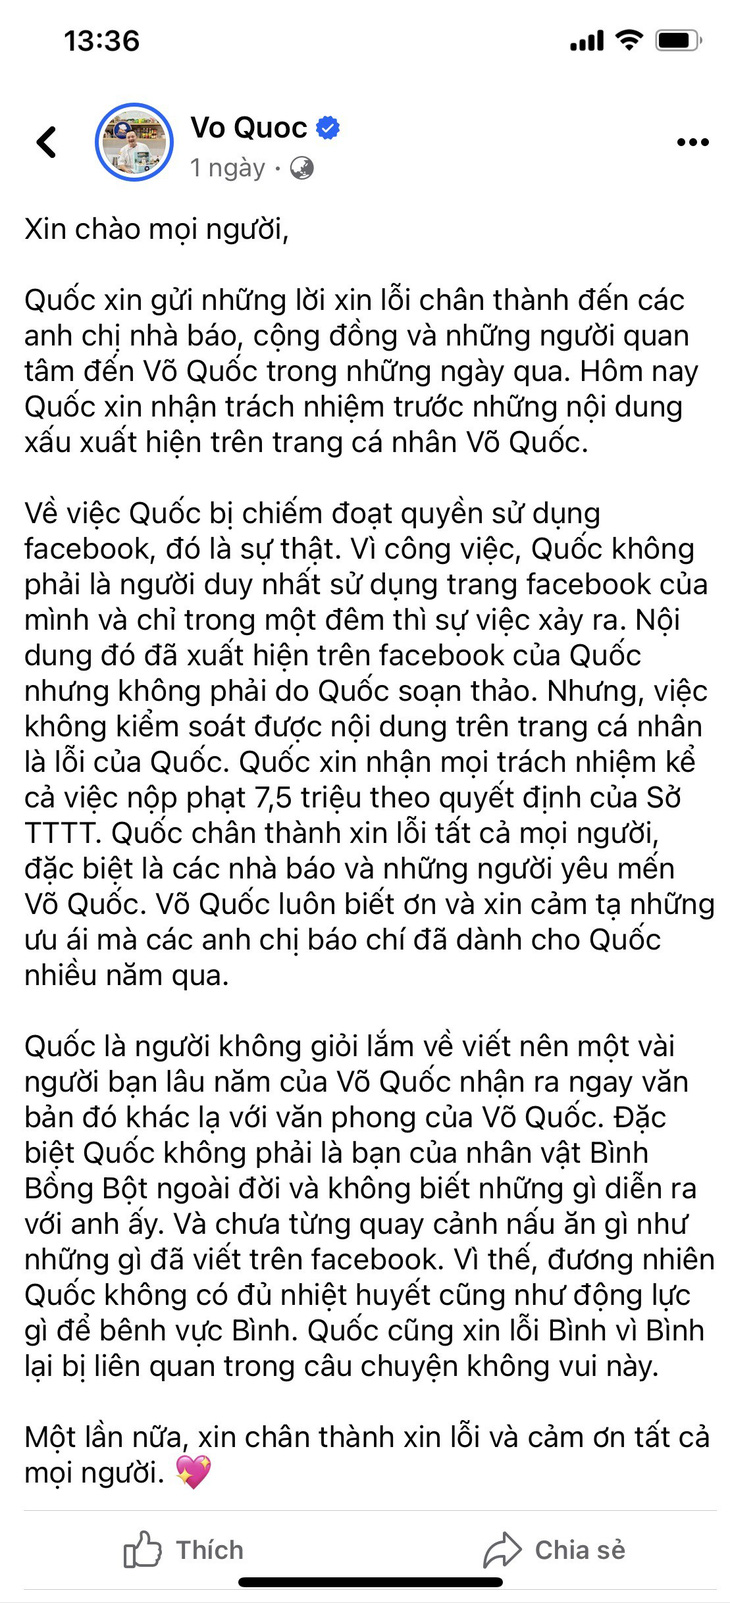 Nội dung bài xin lỗi đăng trên tài khoản facebook Vo Quoc sau khi ông Võ Đình Quốc bị phạt 7.5 triệu đồng- Ảnh chụp màn hình.